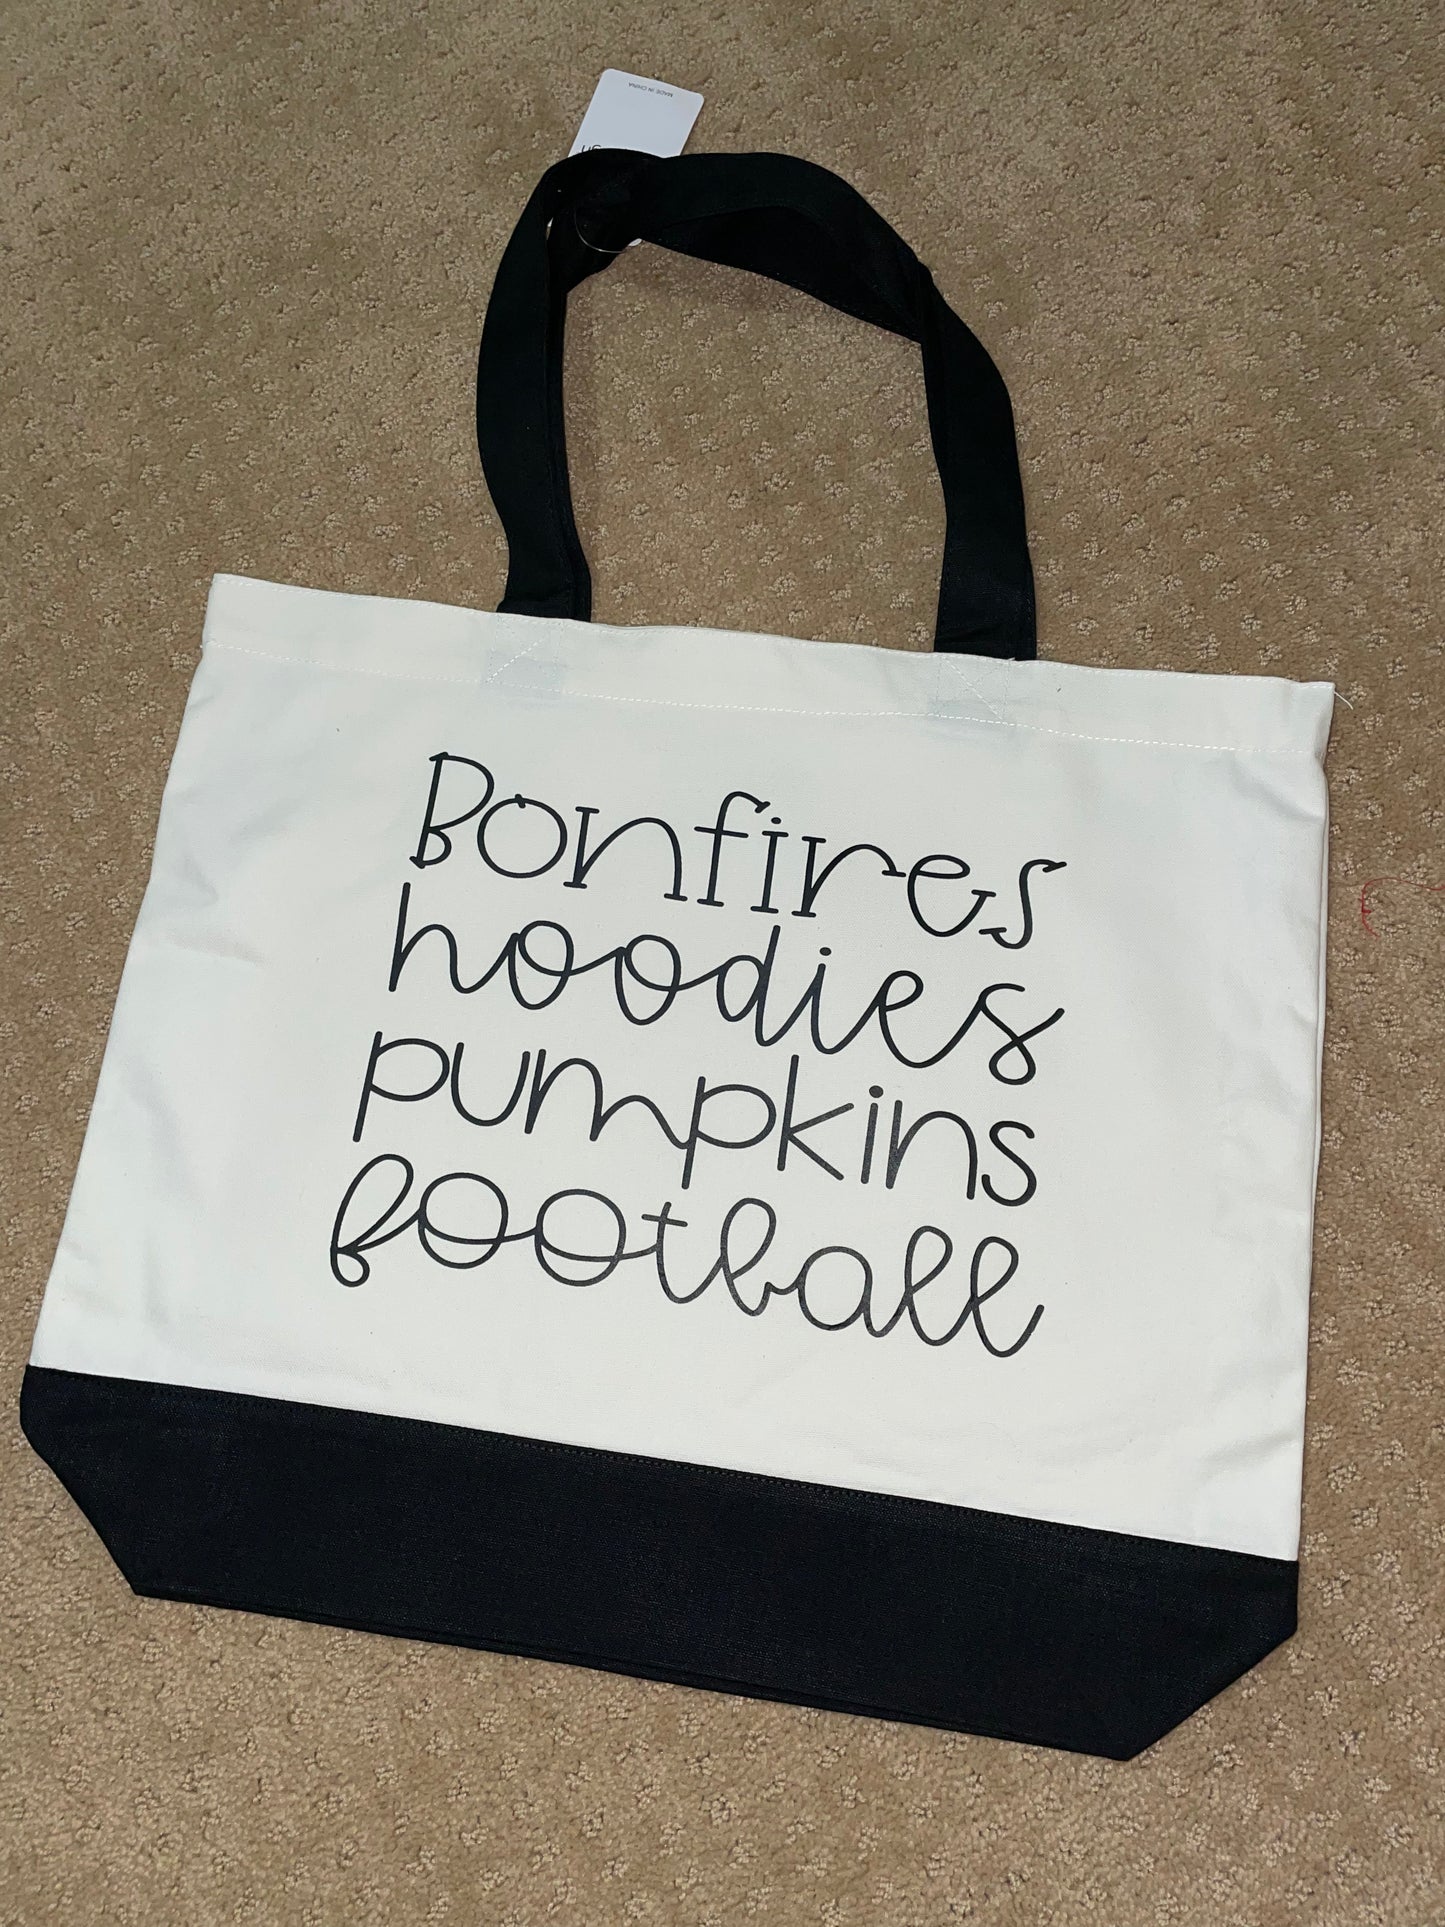 Bonfires, Hoodies, Pumpkins & Football Bag